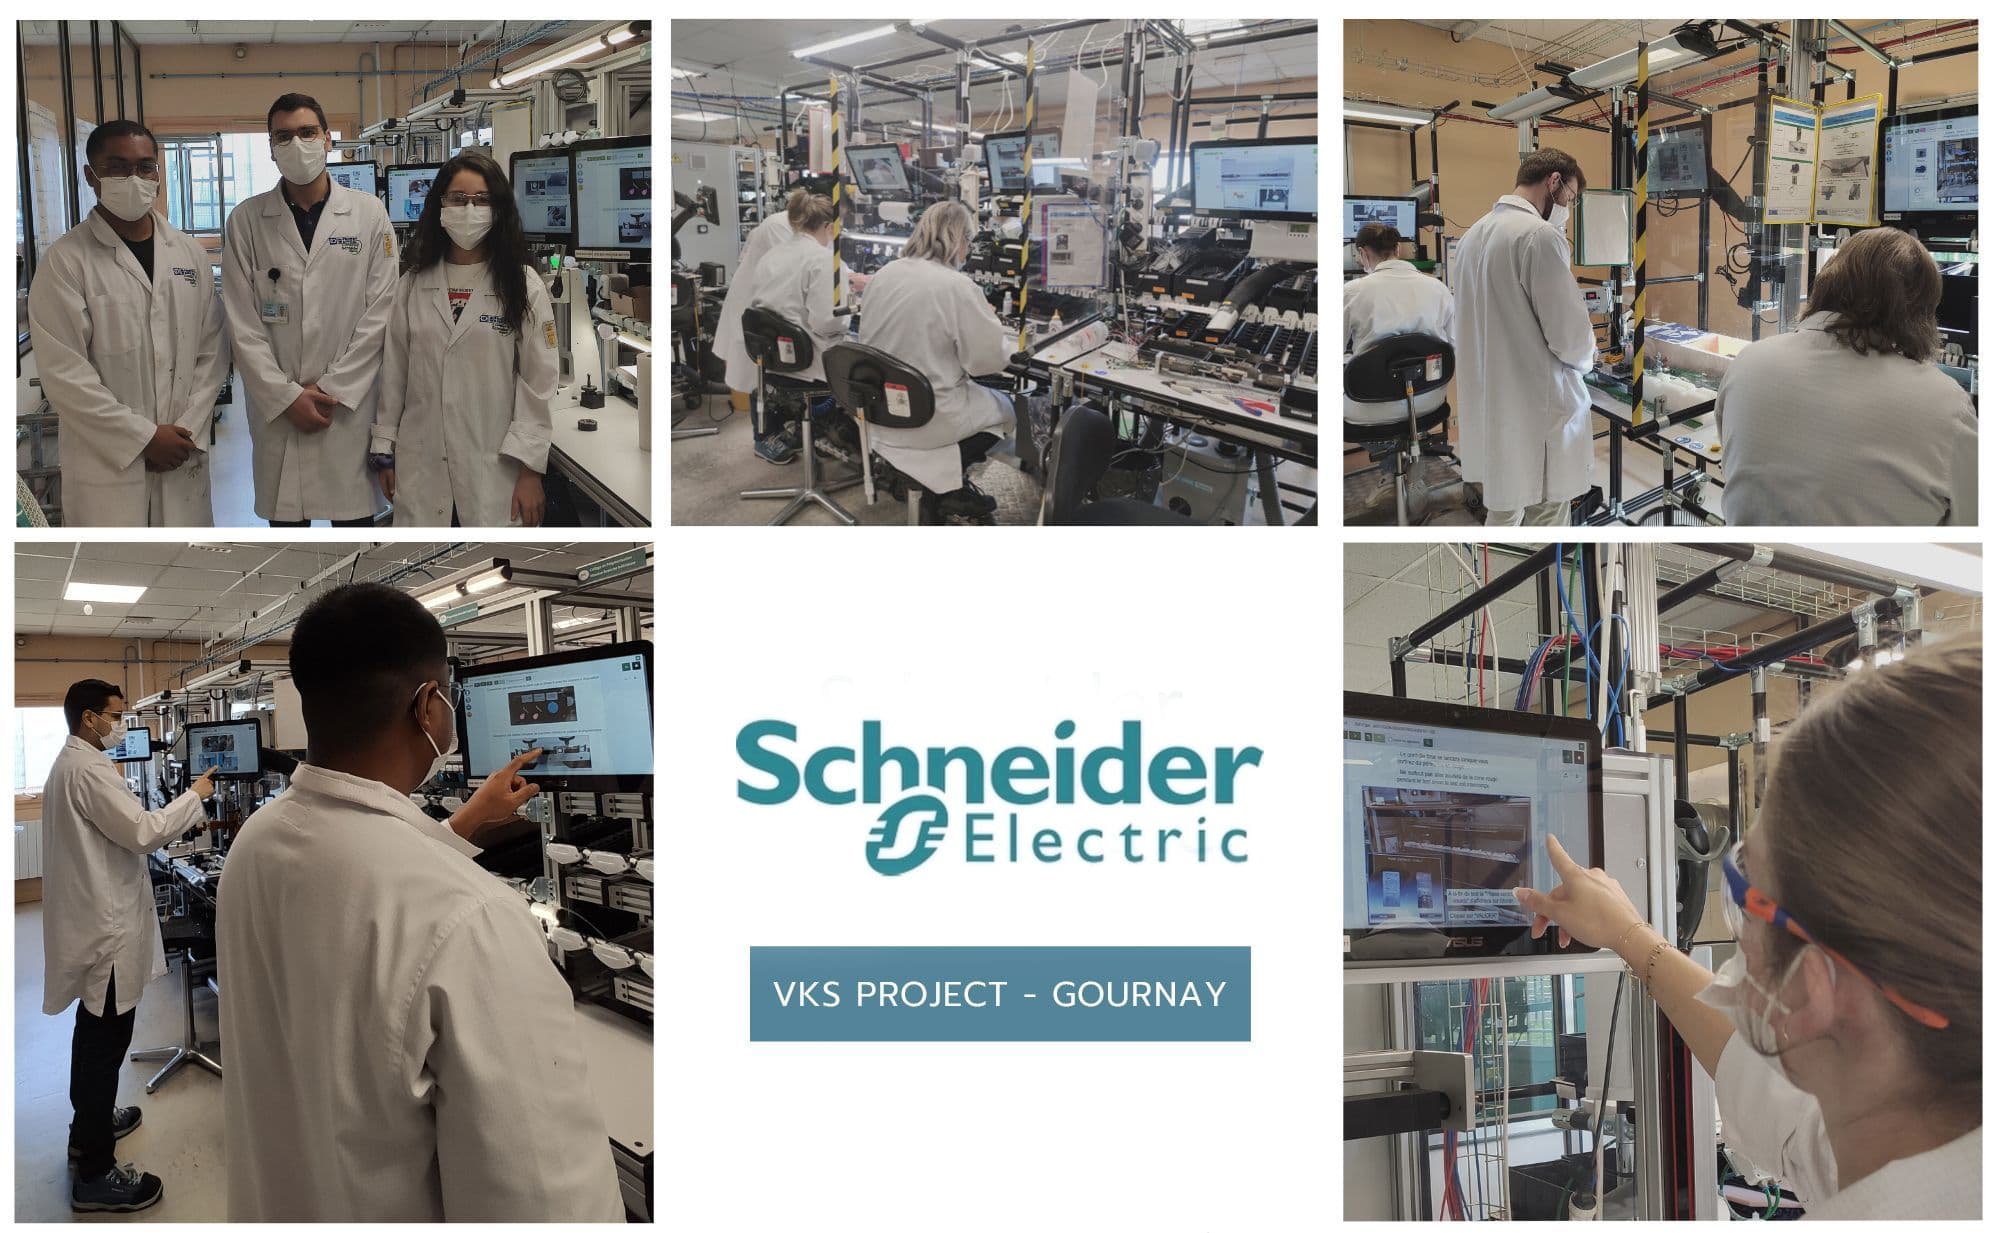 Scheneider electric lab and logo